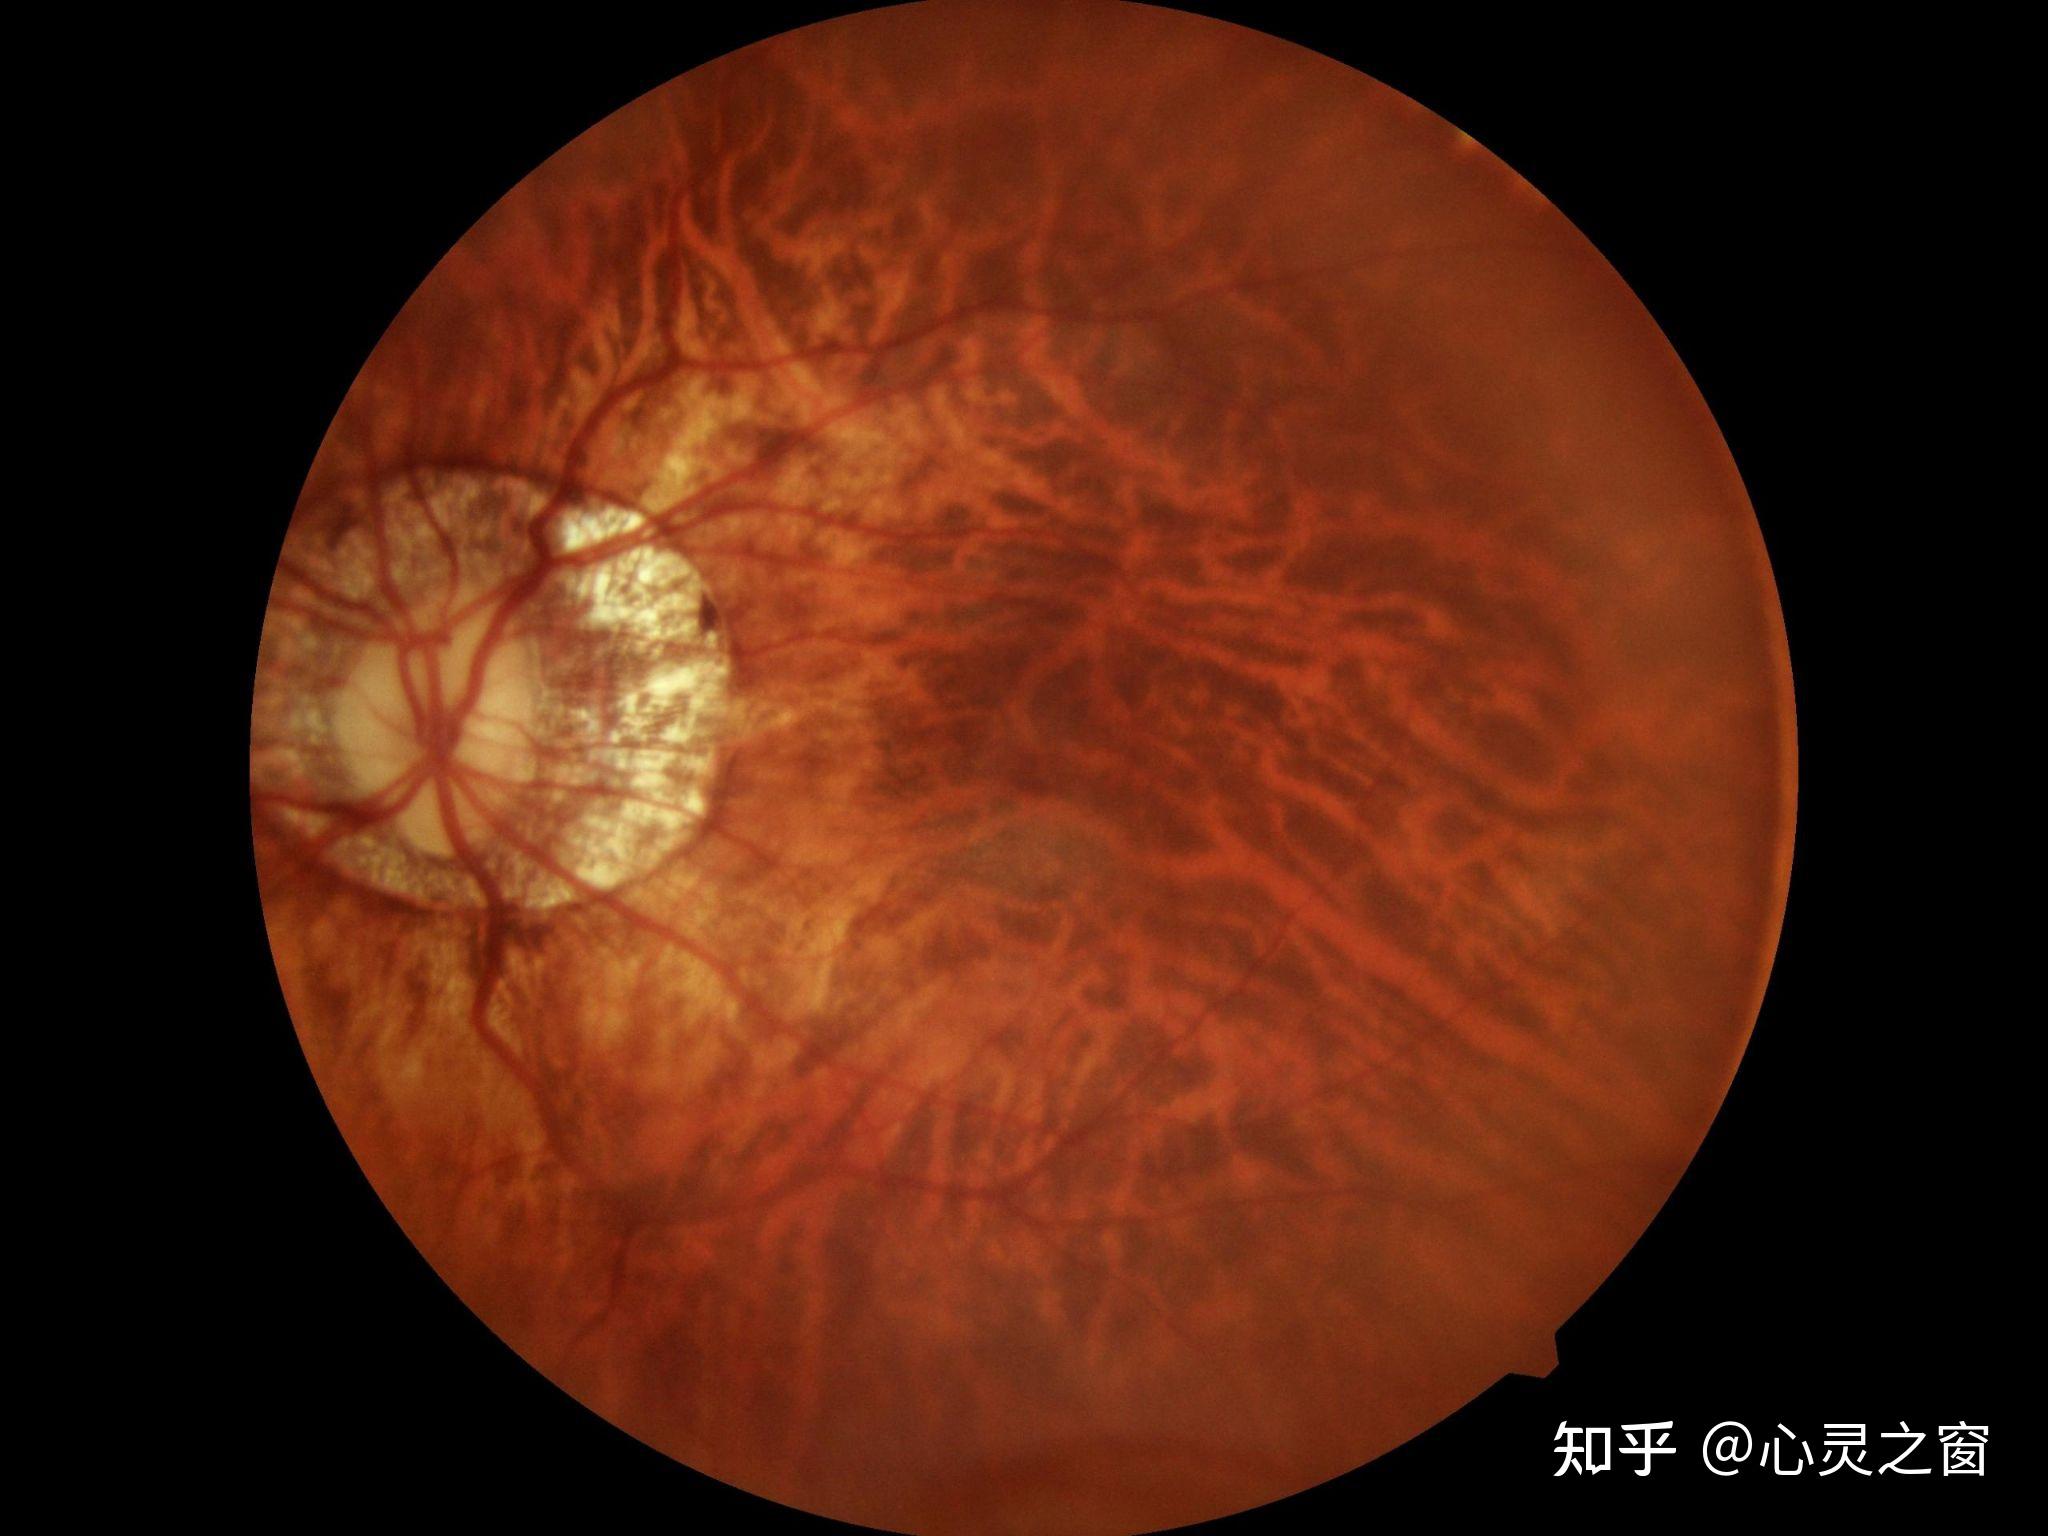 度数约增加250-300度),且眼底视网膜呈豹纹状眼底改变和弥漫性萎缩